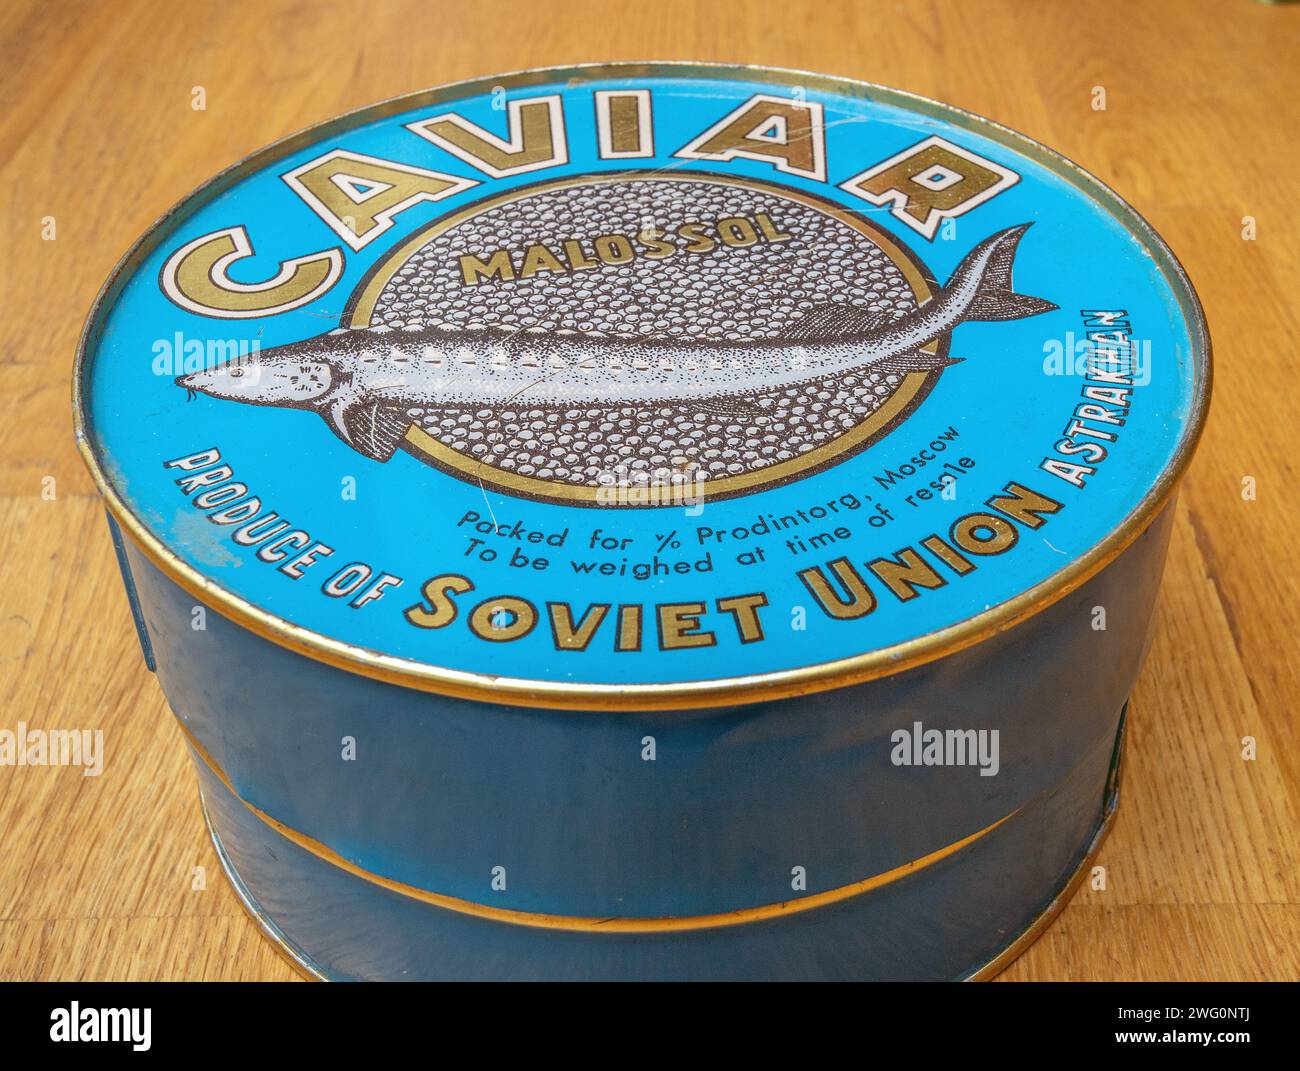 Kiste mit russischem, leicht gesalzenen Belugastörer, schwarzem Kaviar aus der sowjetunion, isoliert auf dem Tisch Stockfoto